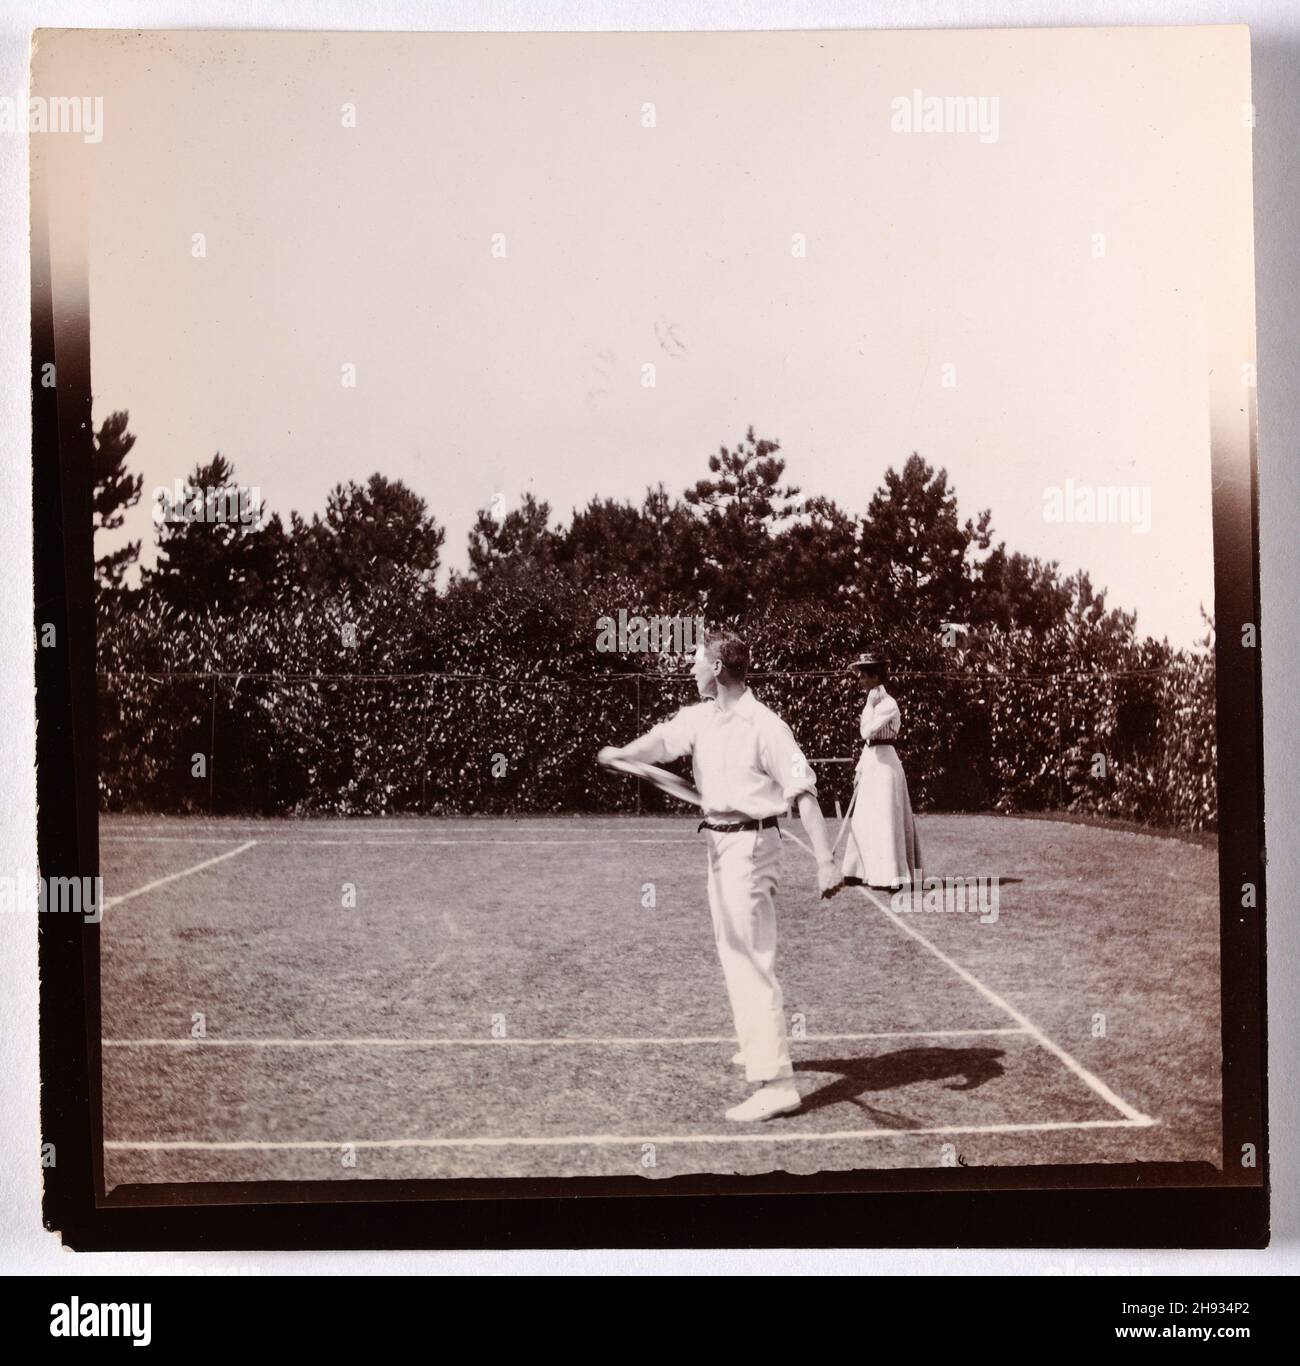 Photographie vintage de l'homme et de la femme jouant mixte double tennis, anglais, anonyme, 1910 Banque D'Images